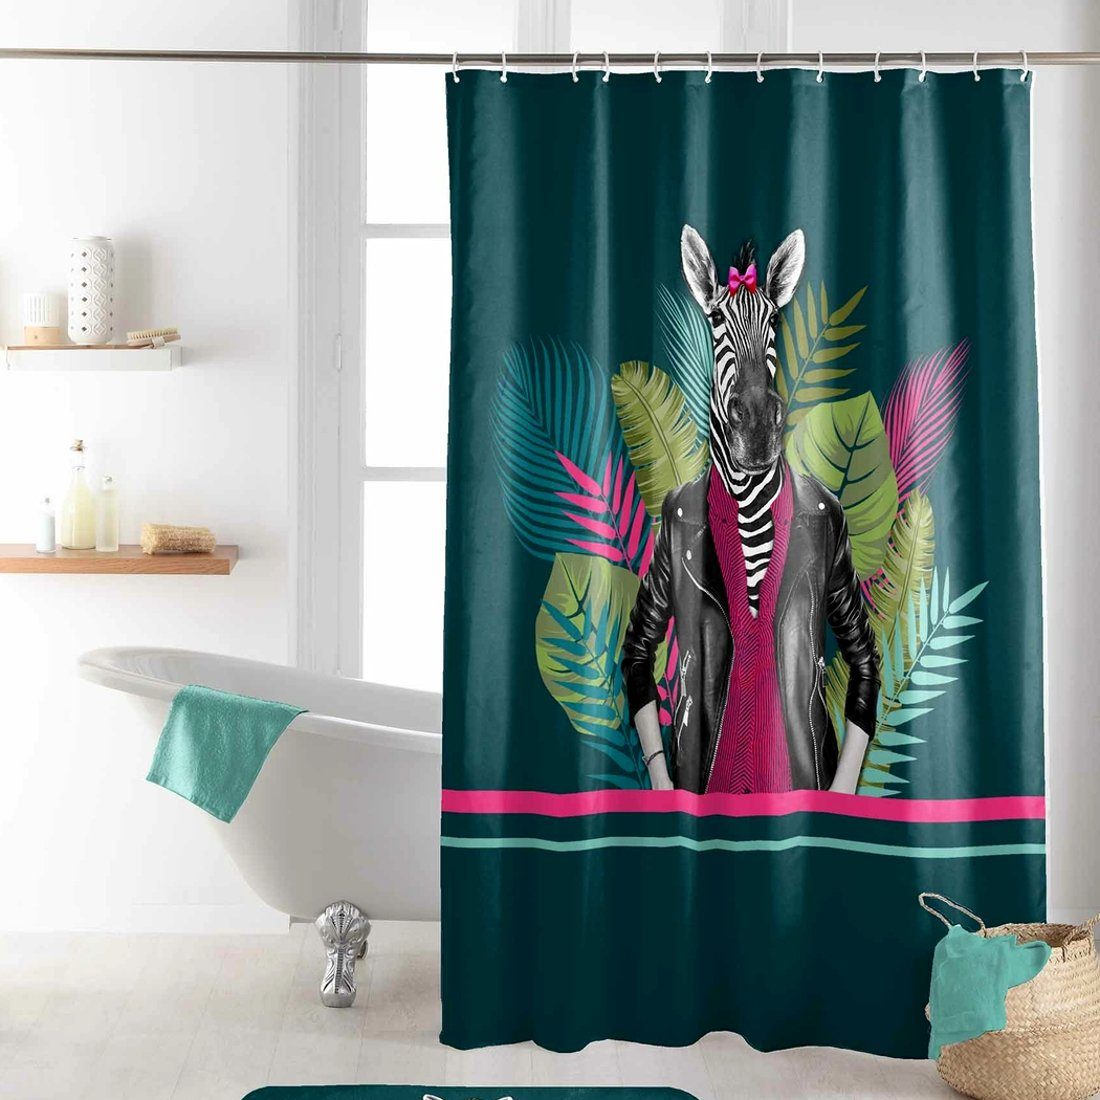 Sanixa Duschvorhang waschbar Badewannenvorhang Vorhang hochwertig mit  Ringen Metallösen Breite 180 cm, Duschvorhang Textil 200x180 cm Zebra grün  wasserabweisend